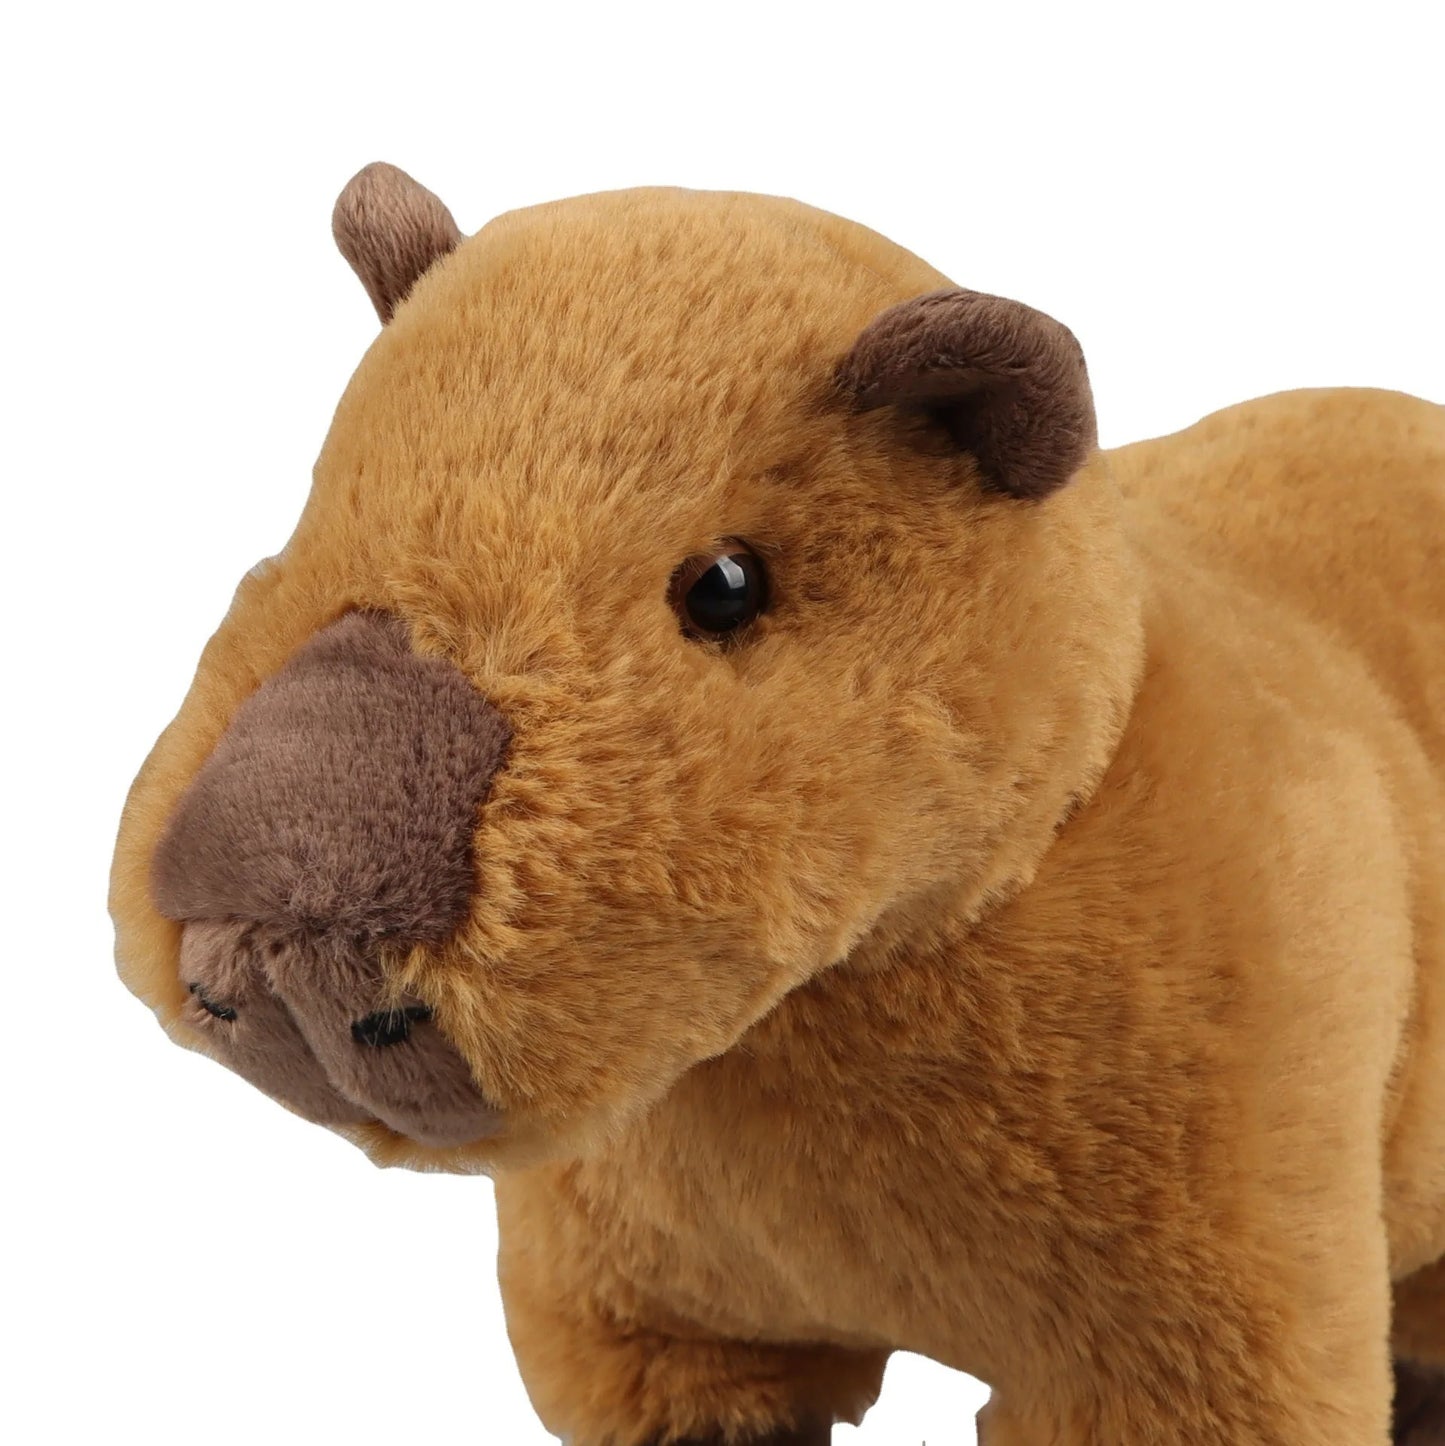 Capybara Family plushie set